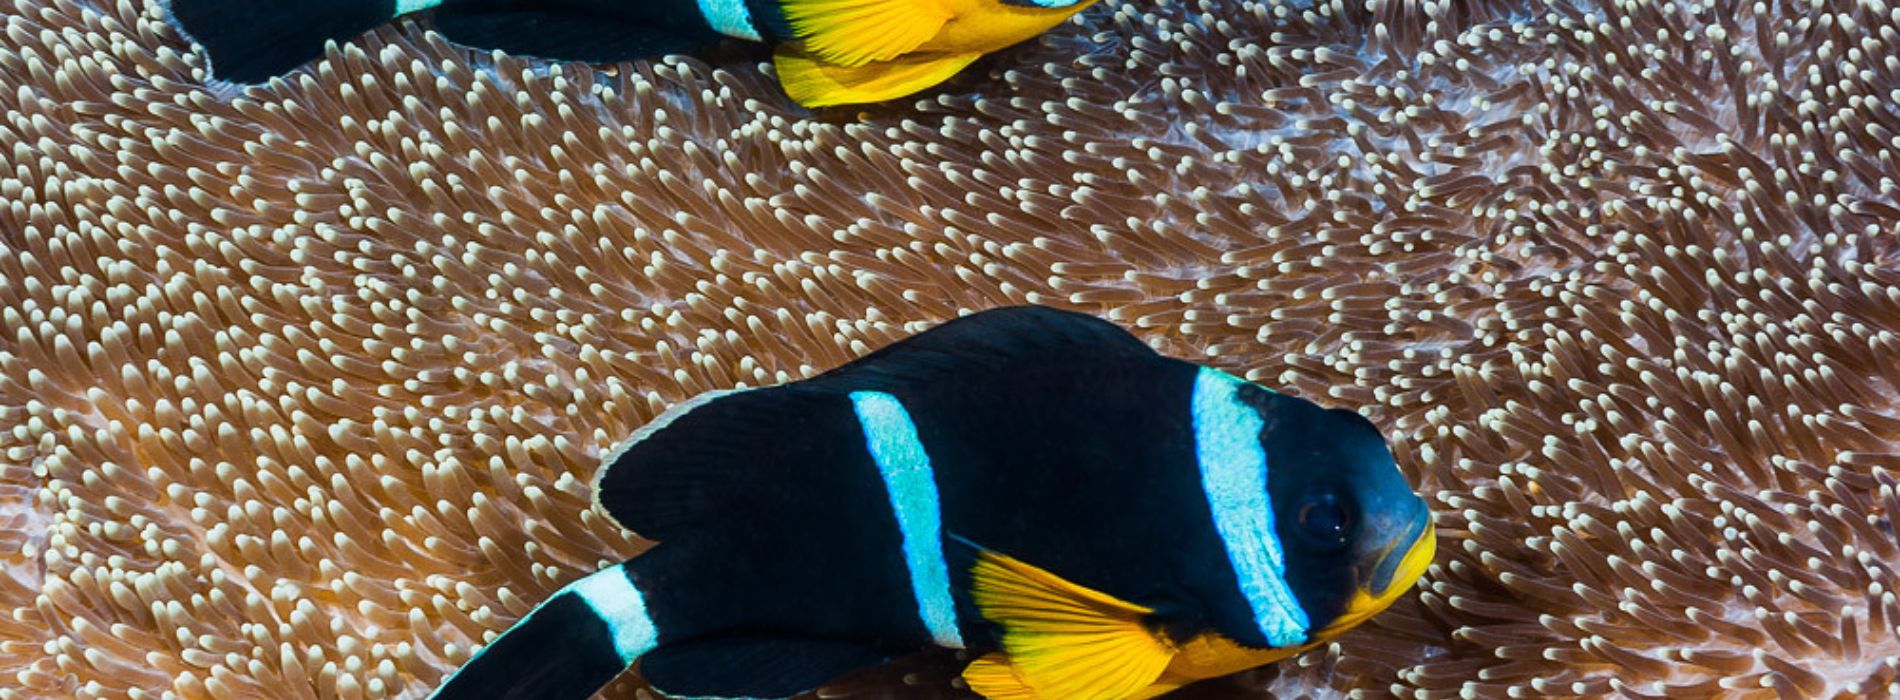 Mauritius-Anemonenfisch-Weibchen-und-Männchen-schwimmen